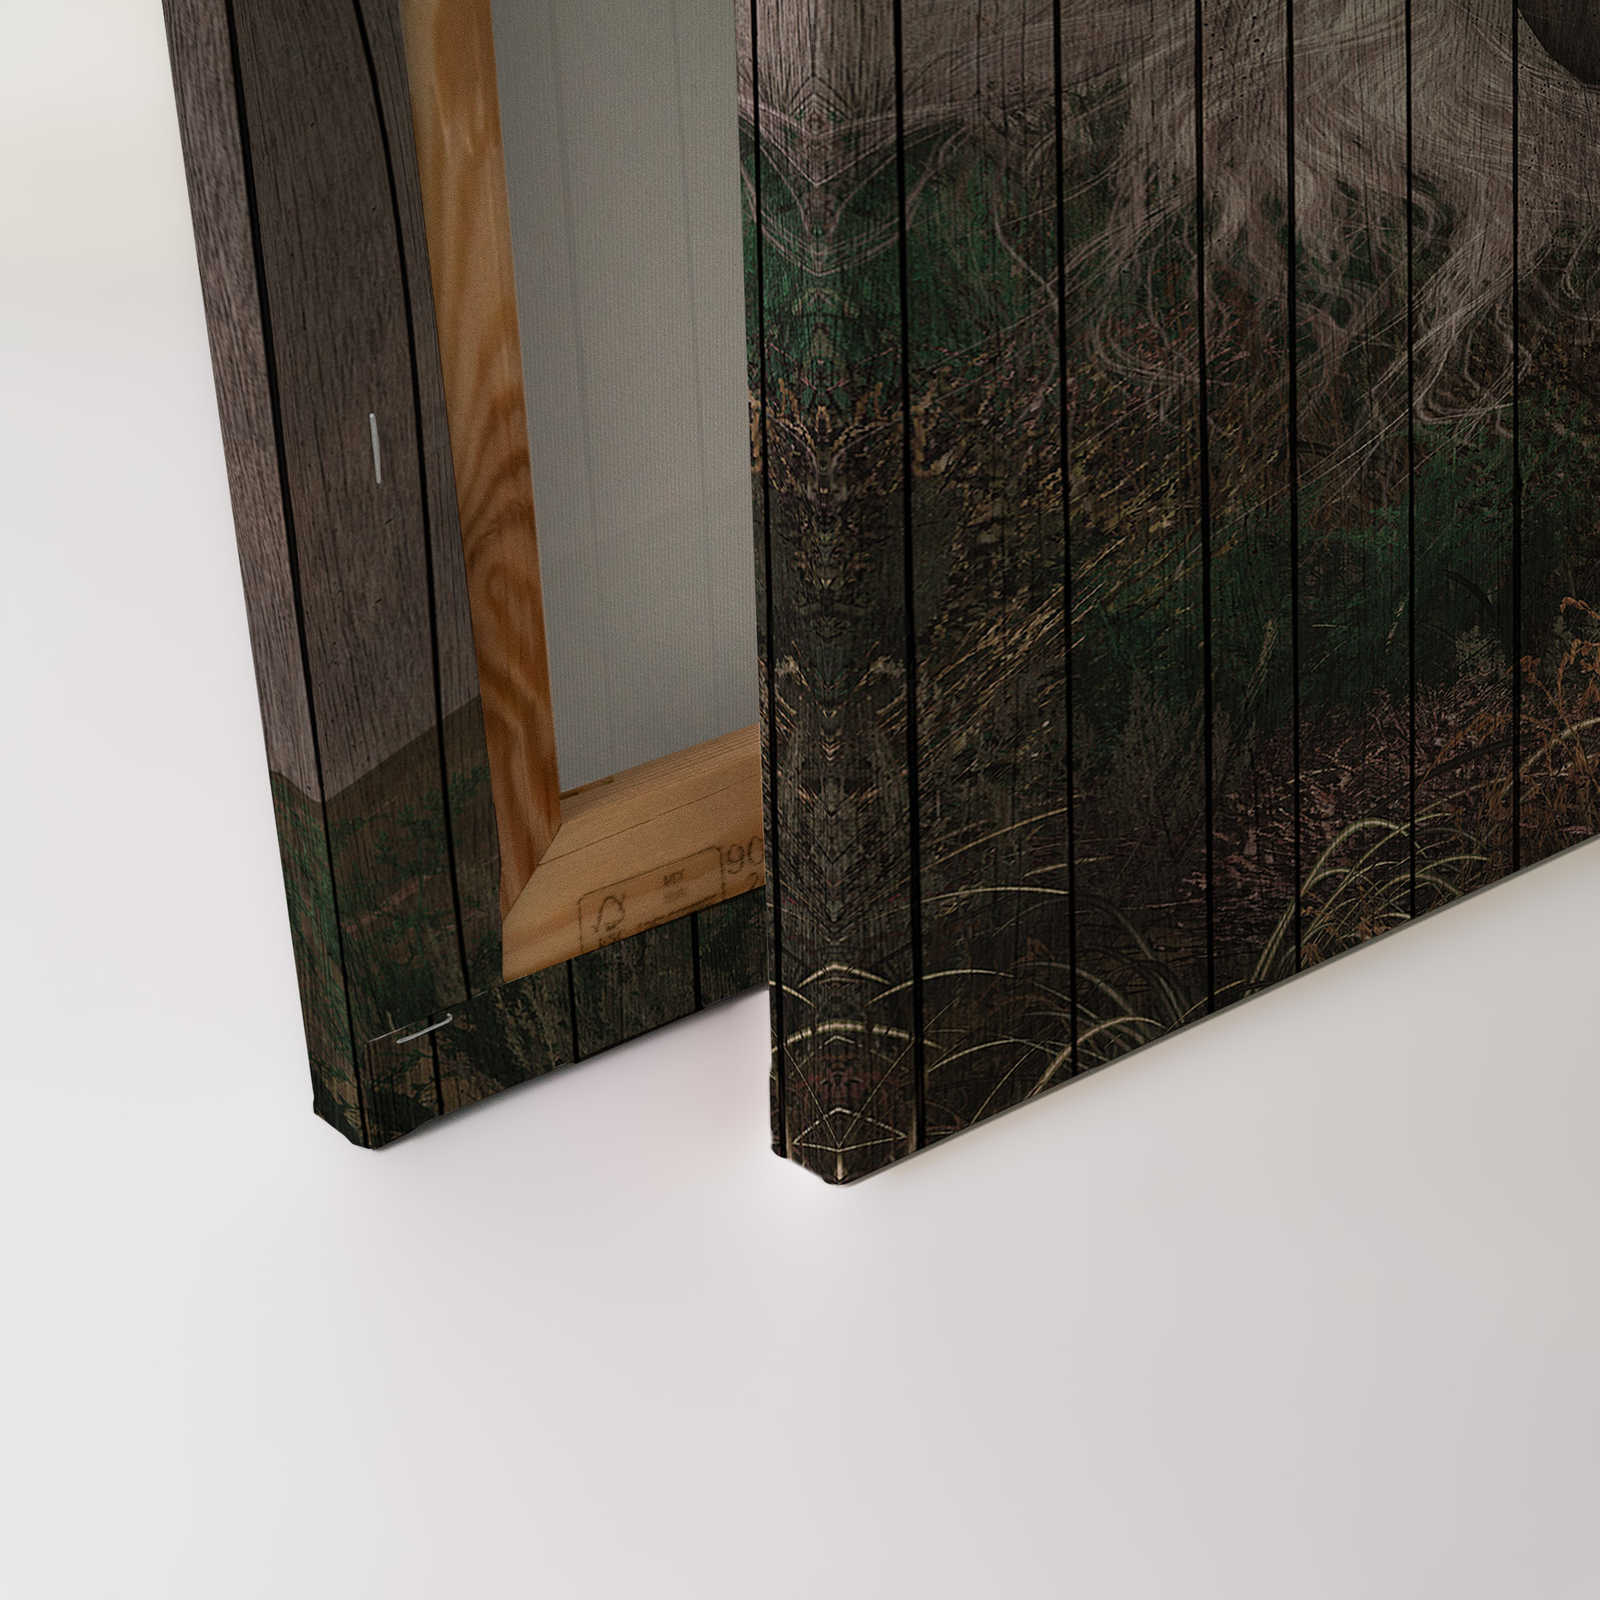             Fantasia 3 - Quadro su tela tinta unicacorno con aspetto di tavola di legno - 0,90 m x 0,60 m
        